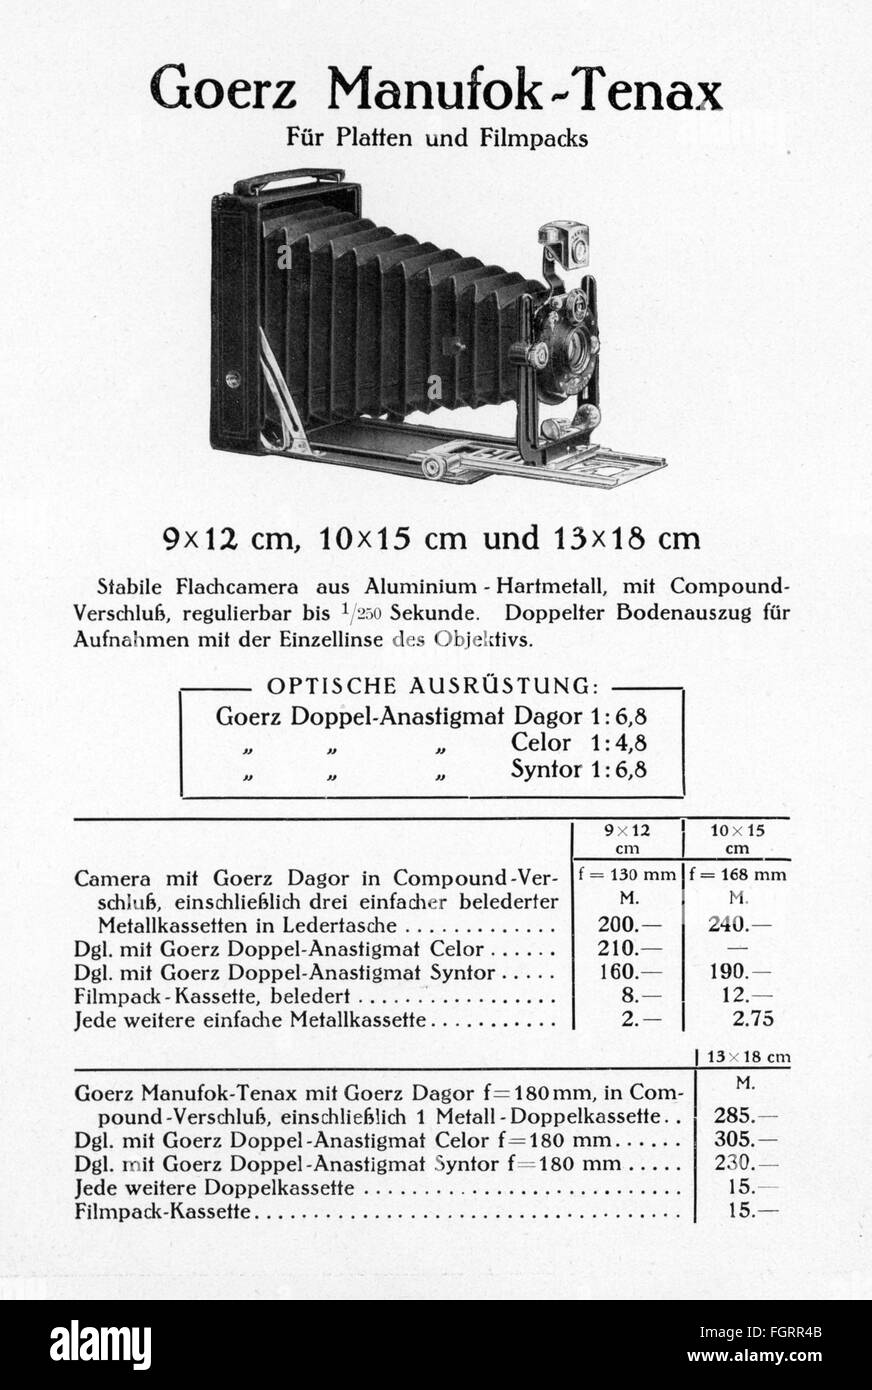 Werbung, Fotografie, Werbeprospekt für 'Goerz Tenax' Kameras, Berlin, Core, Modell 'Manufok-Tenax', 1912, zusätzliche-Rechte-Clearenzen-nicht verfügbar Stockfoto